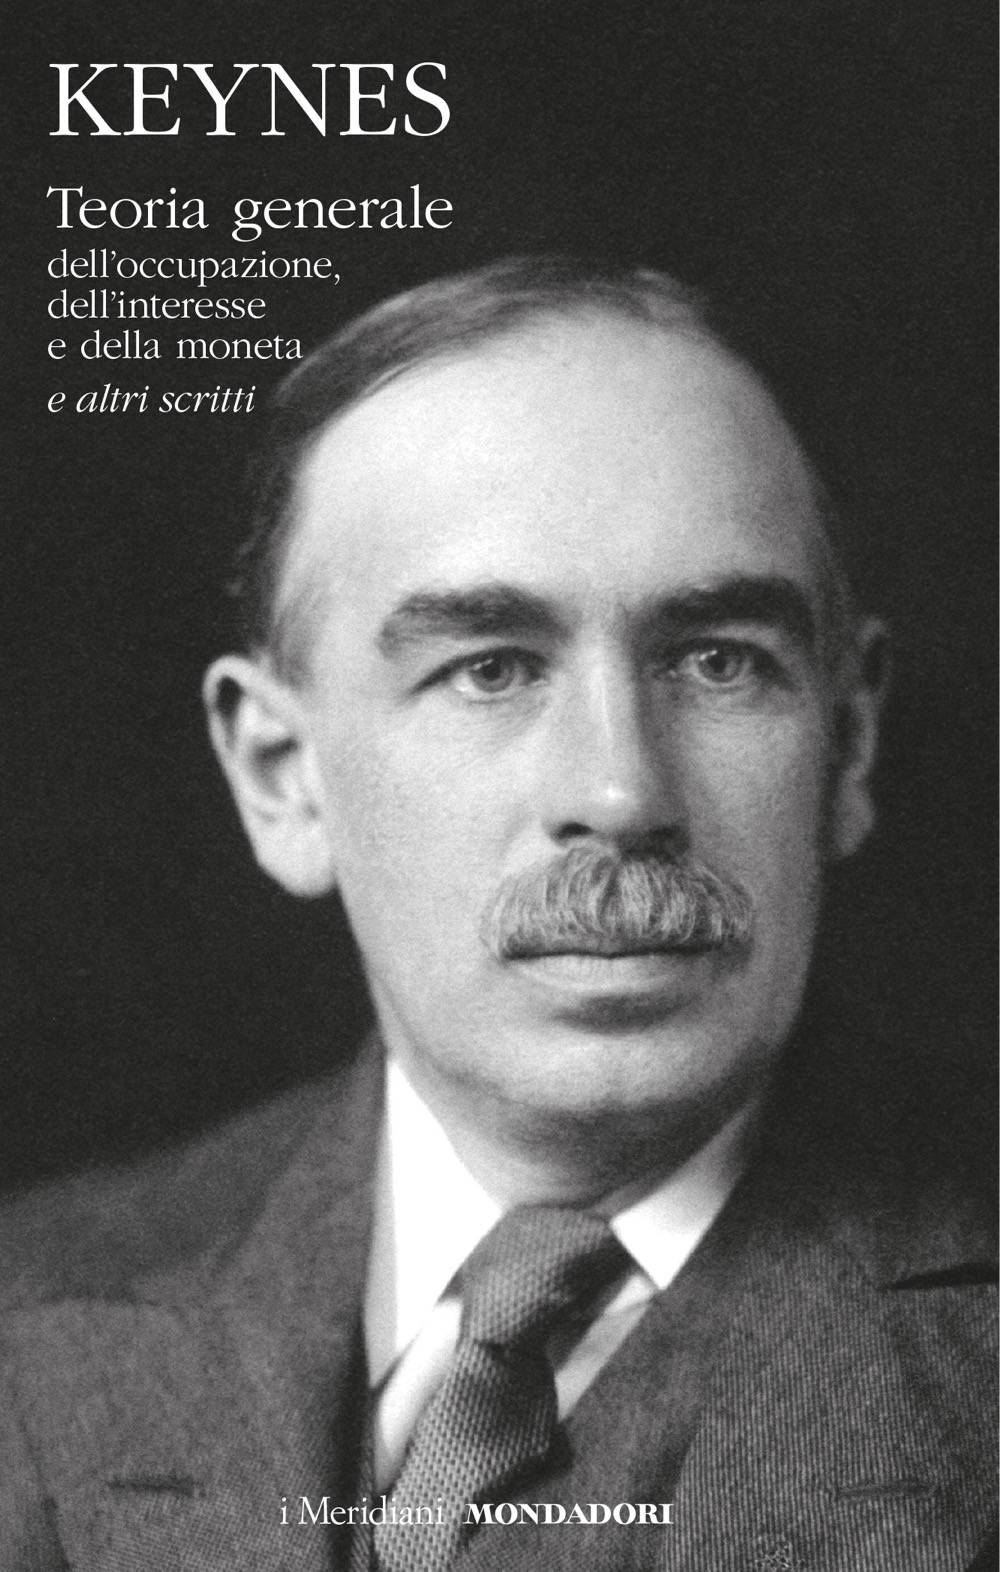 Quando Keynes "corresse" il Trattato di Versailles E vide il futuro dell'Europa